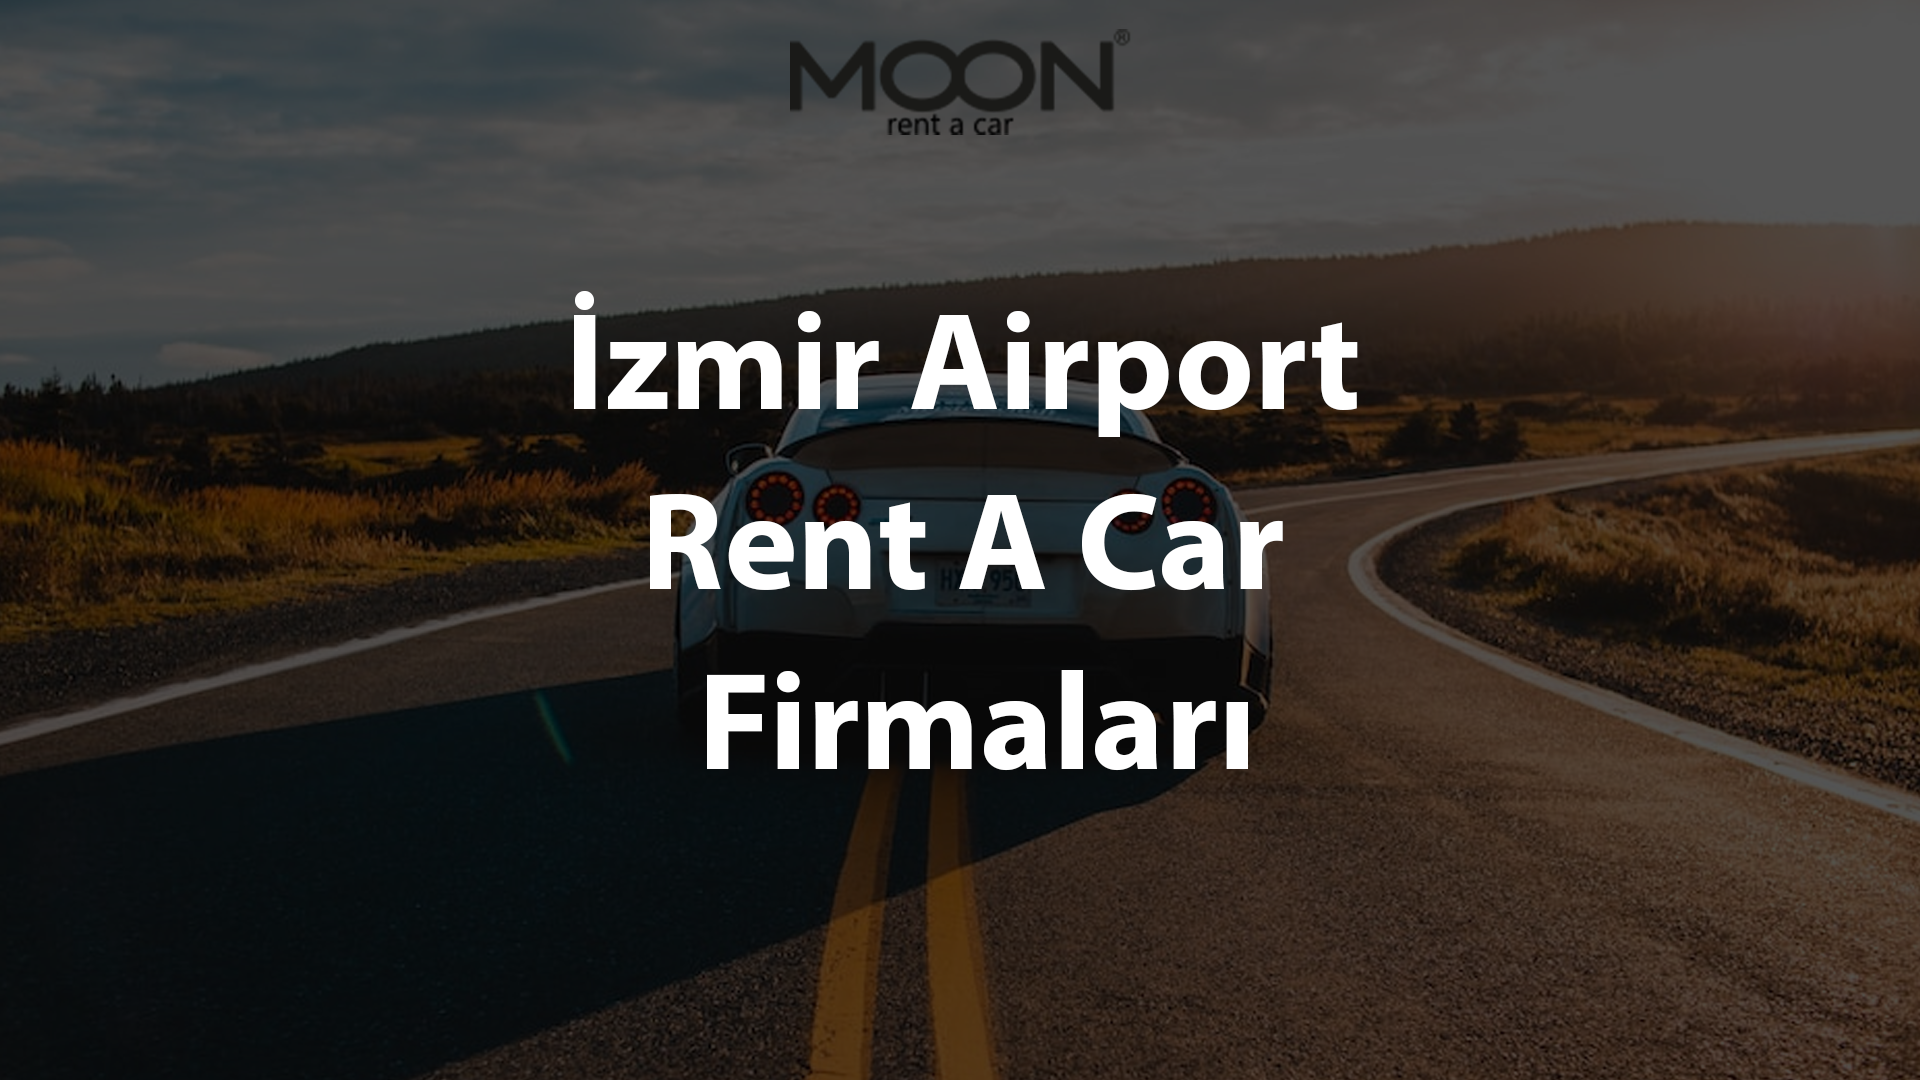 Izmir Airport Rent A Car Companies